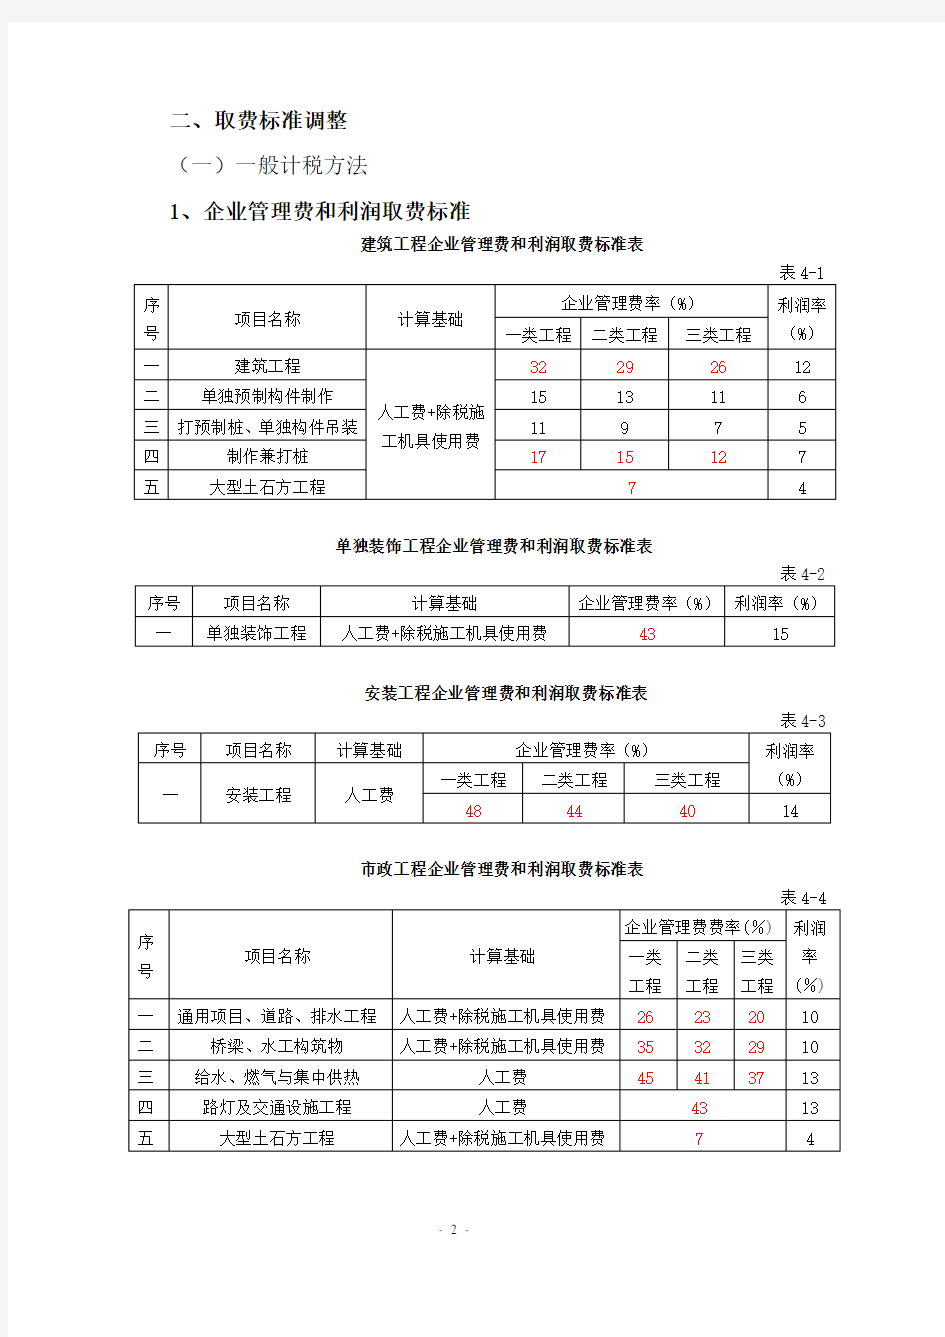 《江苏省建设工程费用定额》(2014年)营改增后调整内容汇编